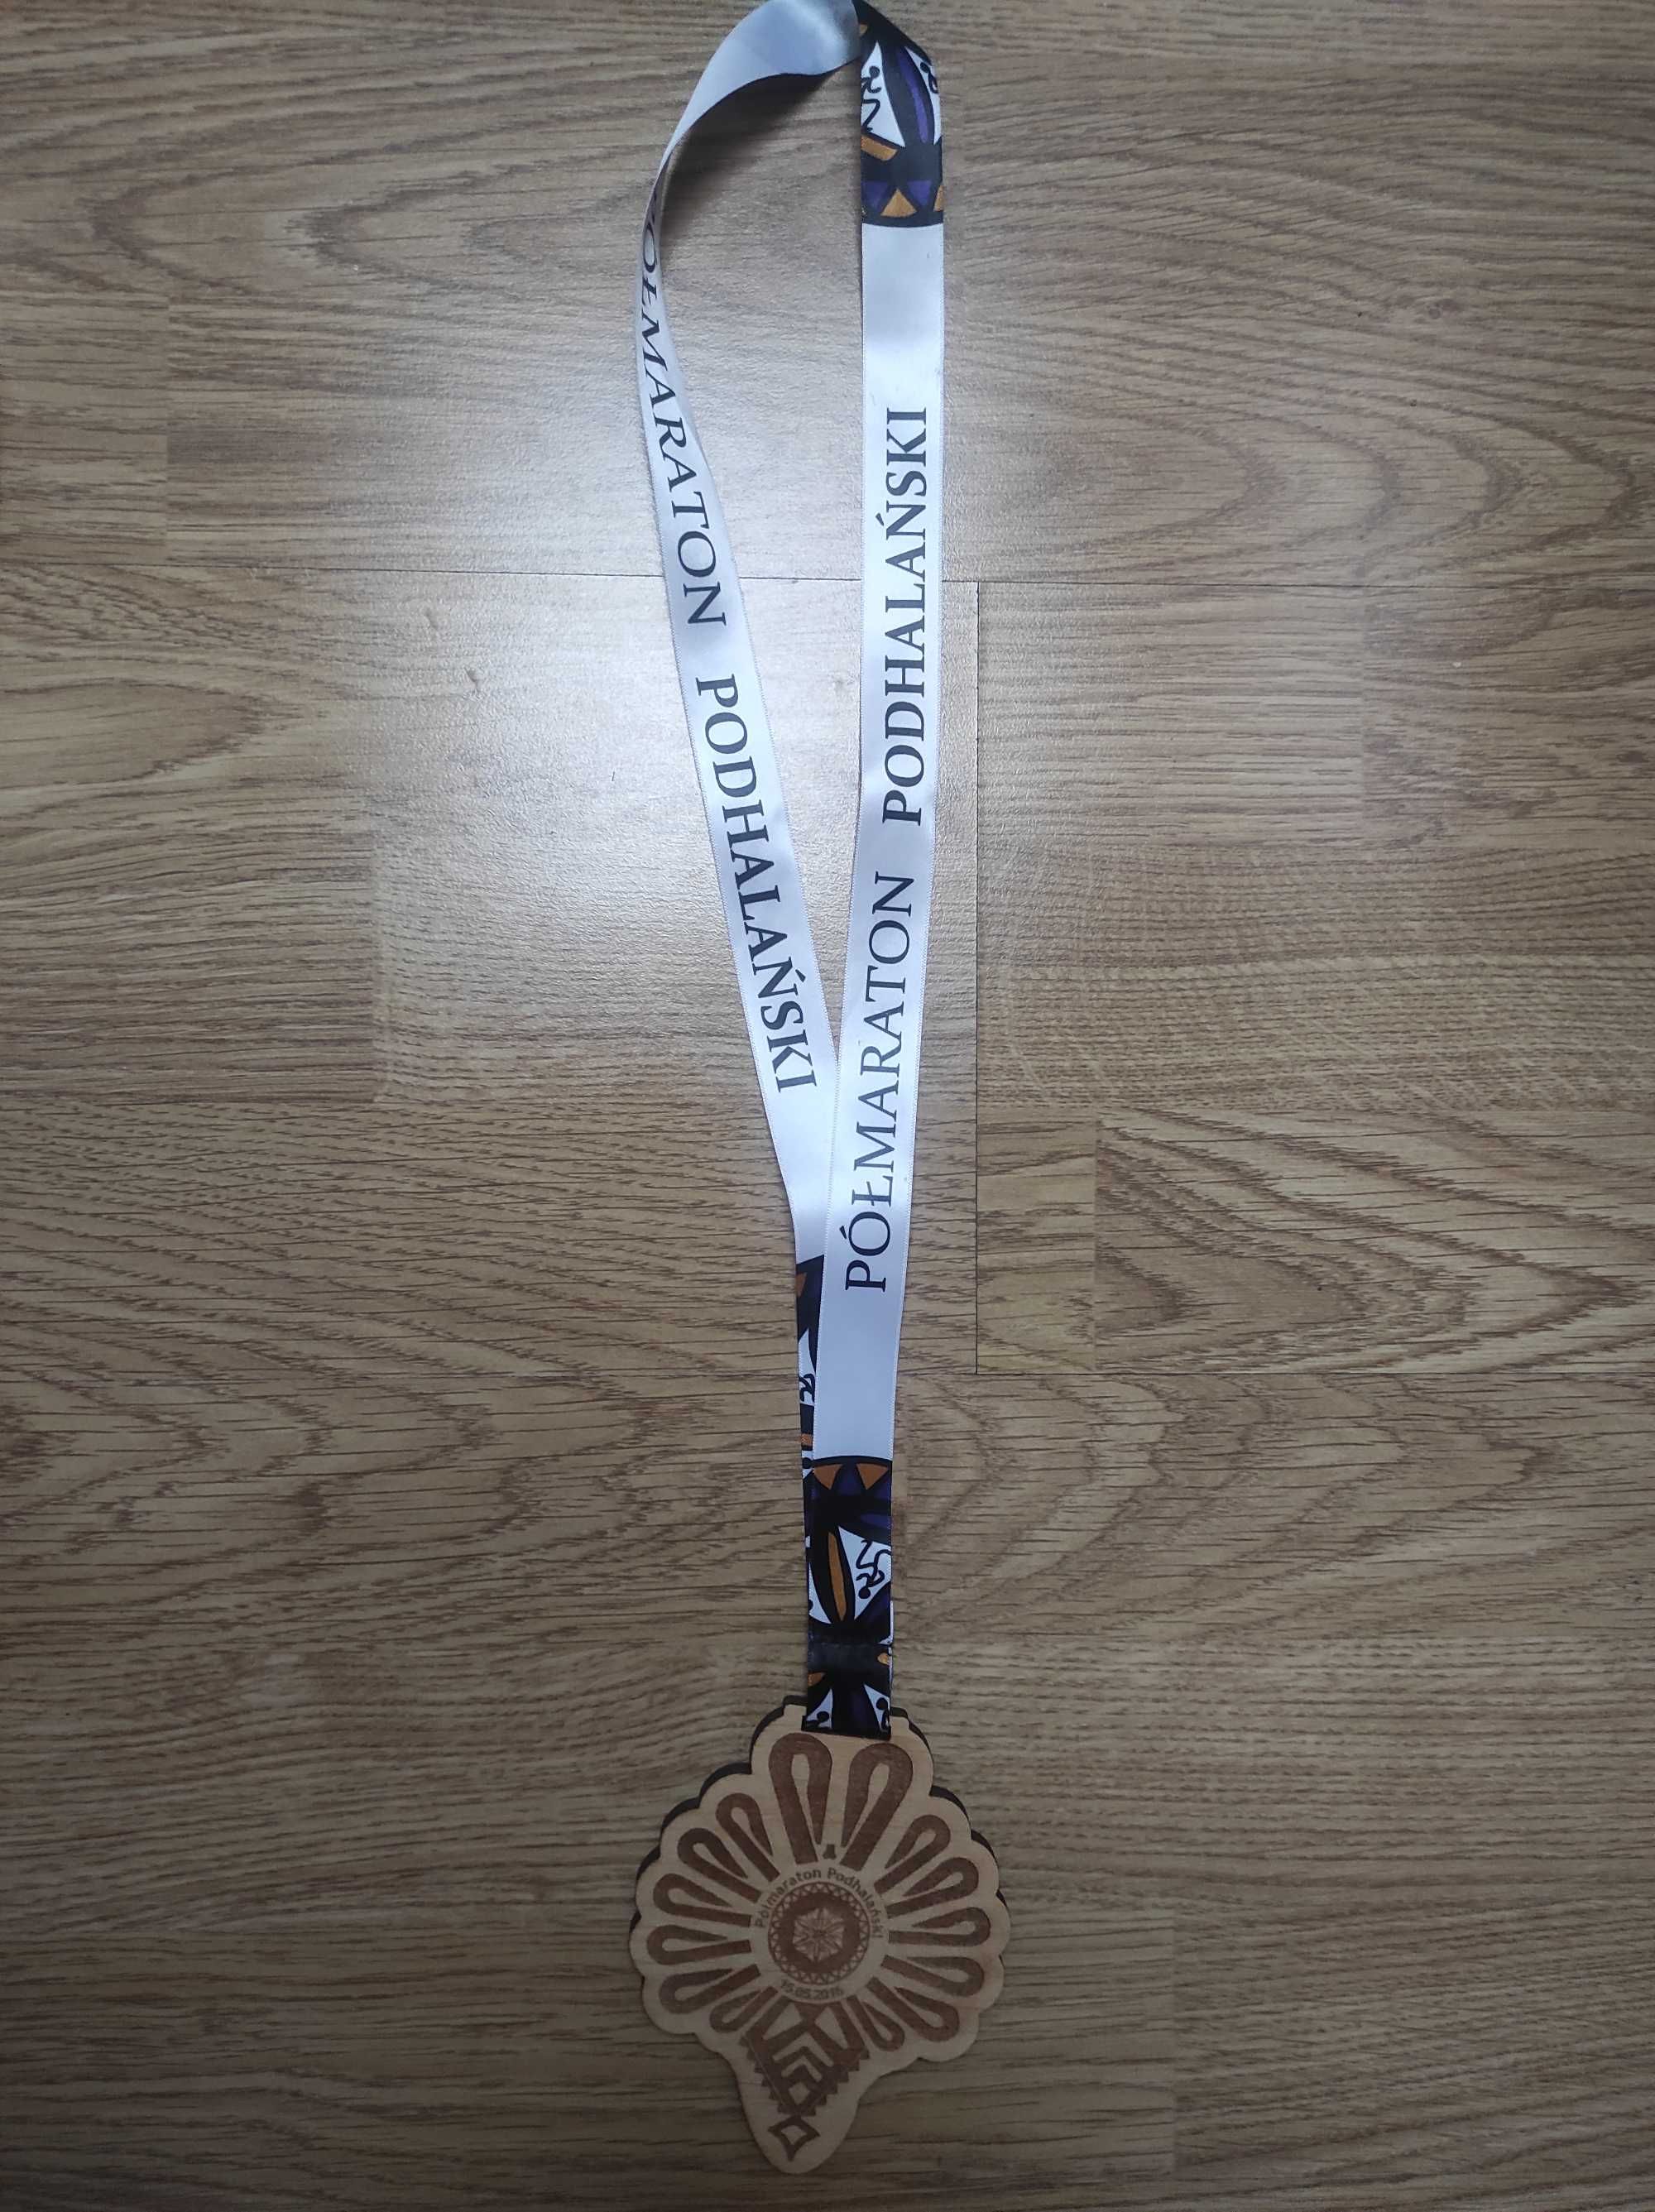 Medal biegowy Półmaraton Podhalański górski 2016 rok